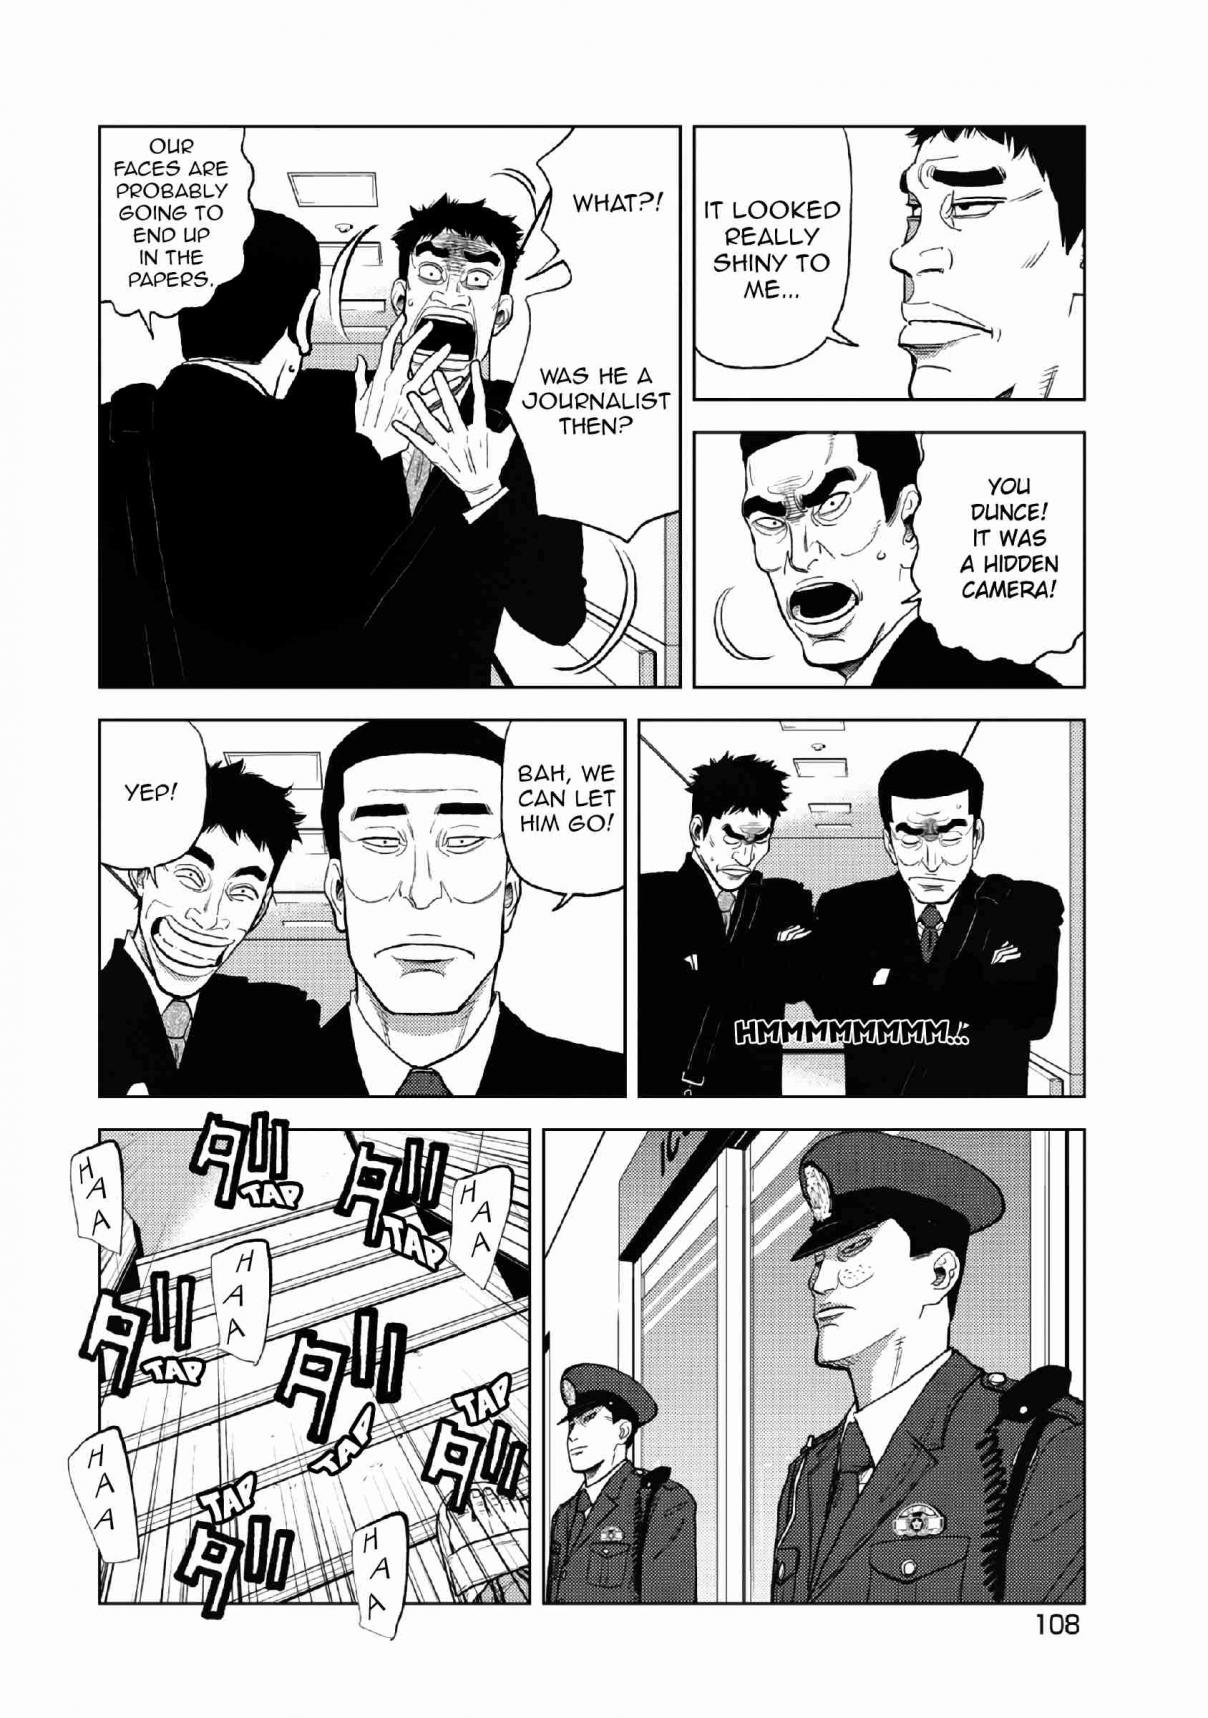 Inspector Kurokochi Vol. 2 Ch. 12 A Golden Hearted Hero